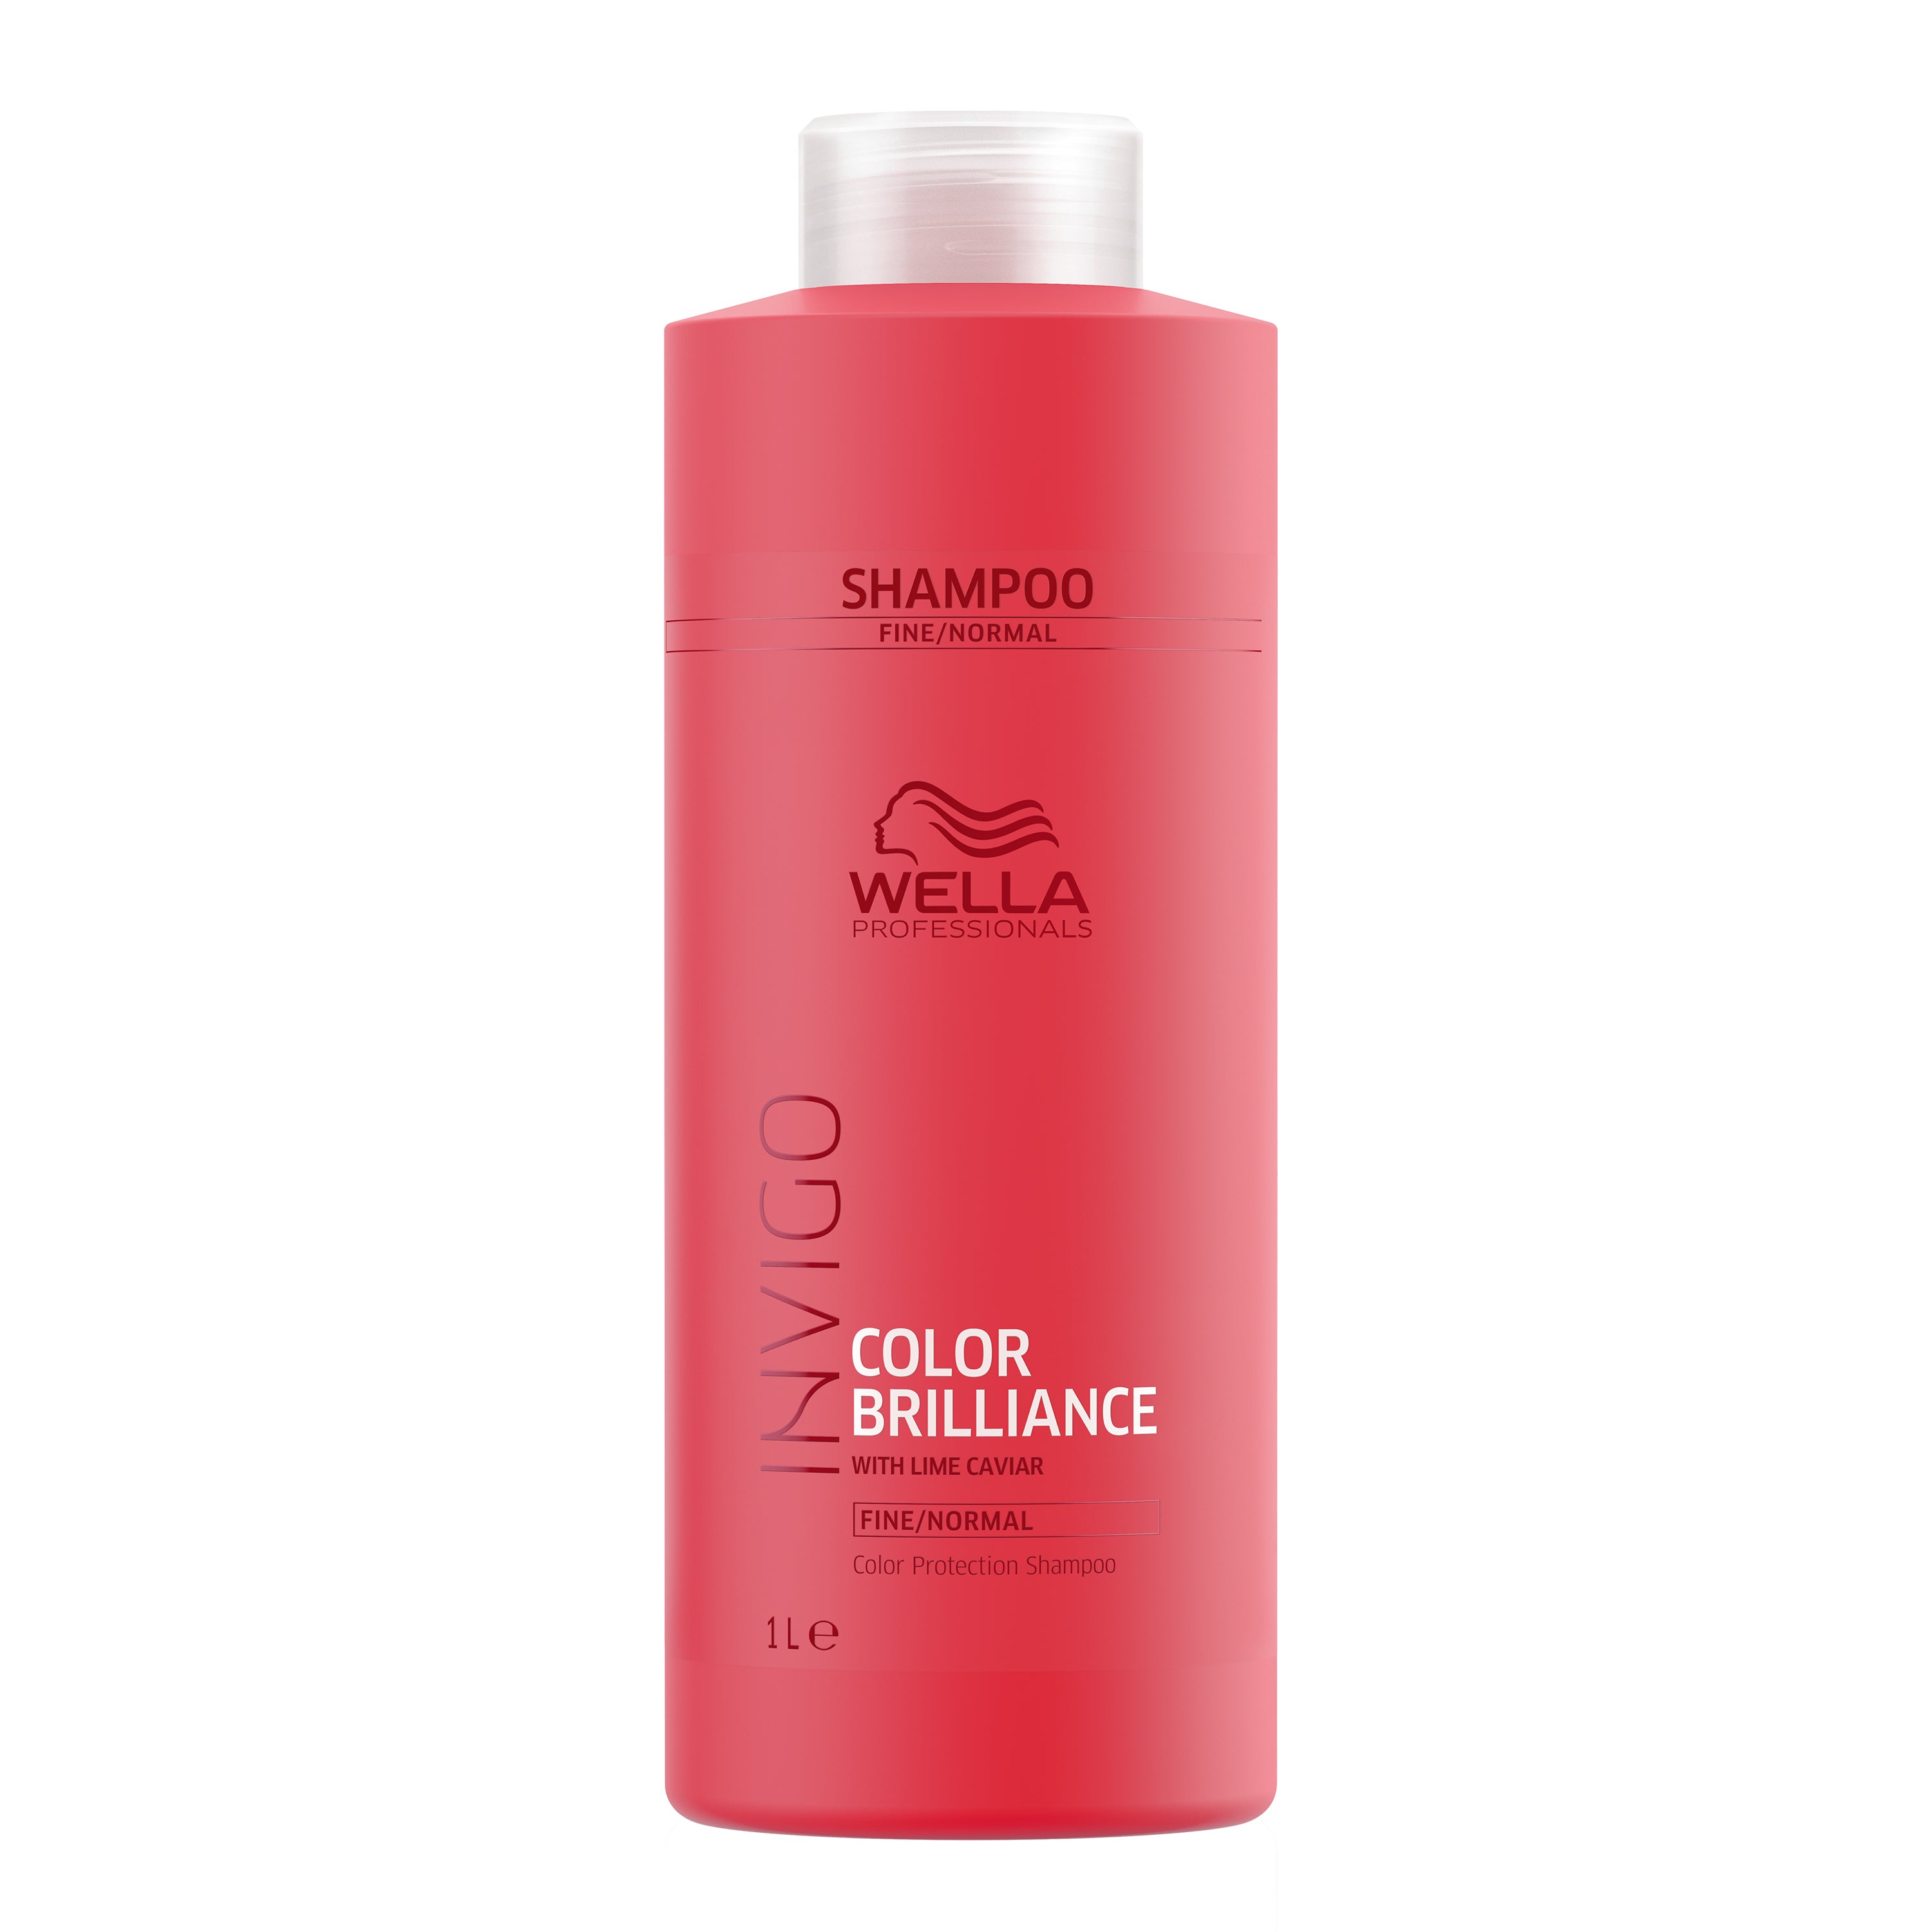 Wella Professionals Invigo Color Brilliance Shampoo & Conditioner 1 Litre Duo